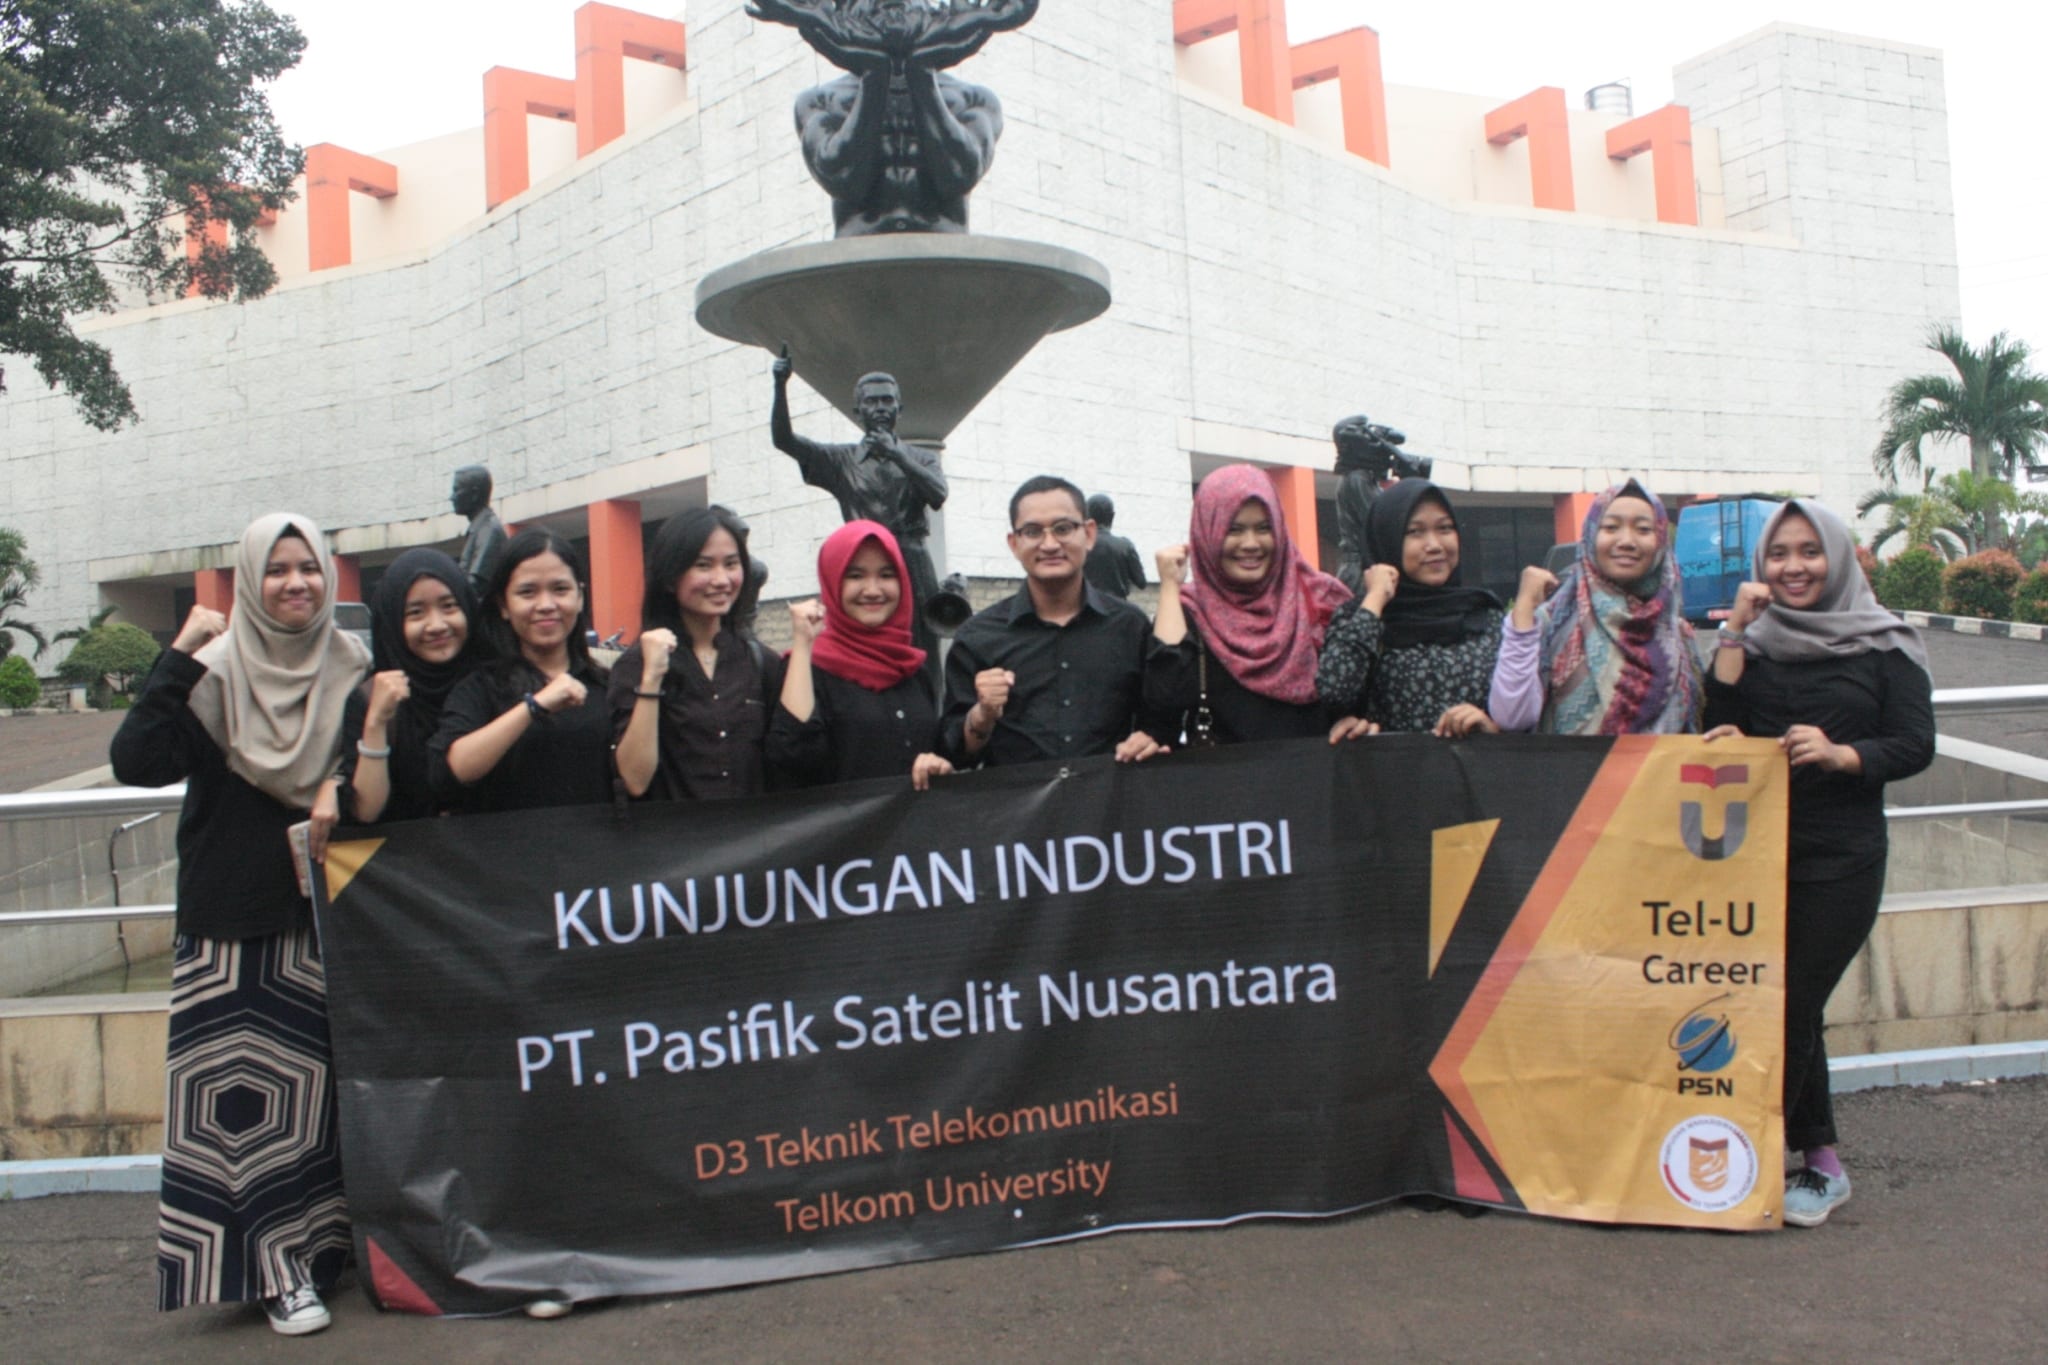 Kunjungan Industri PT. Pasifik Satelit Nusantara